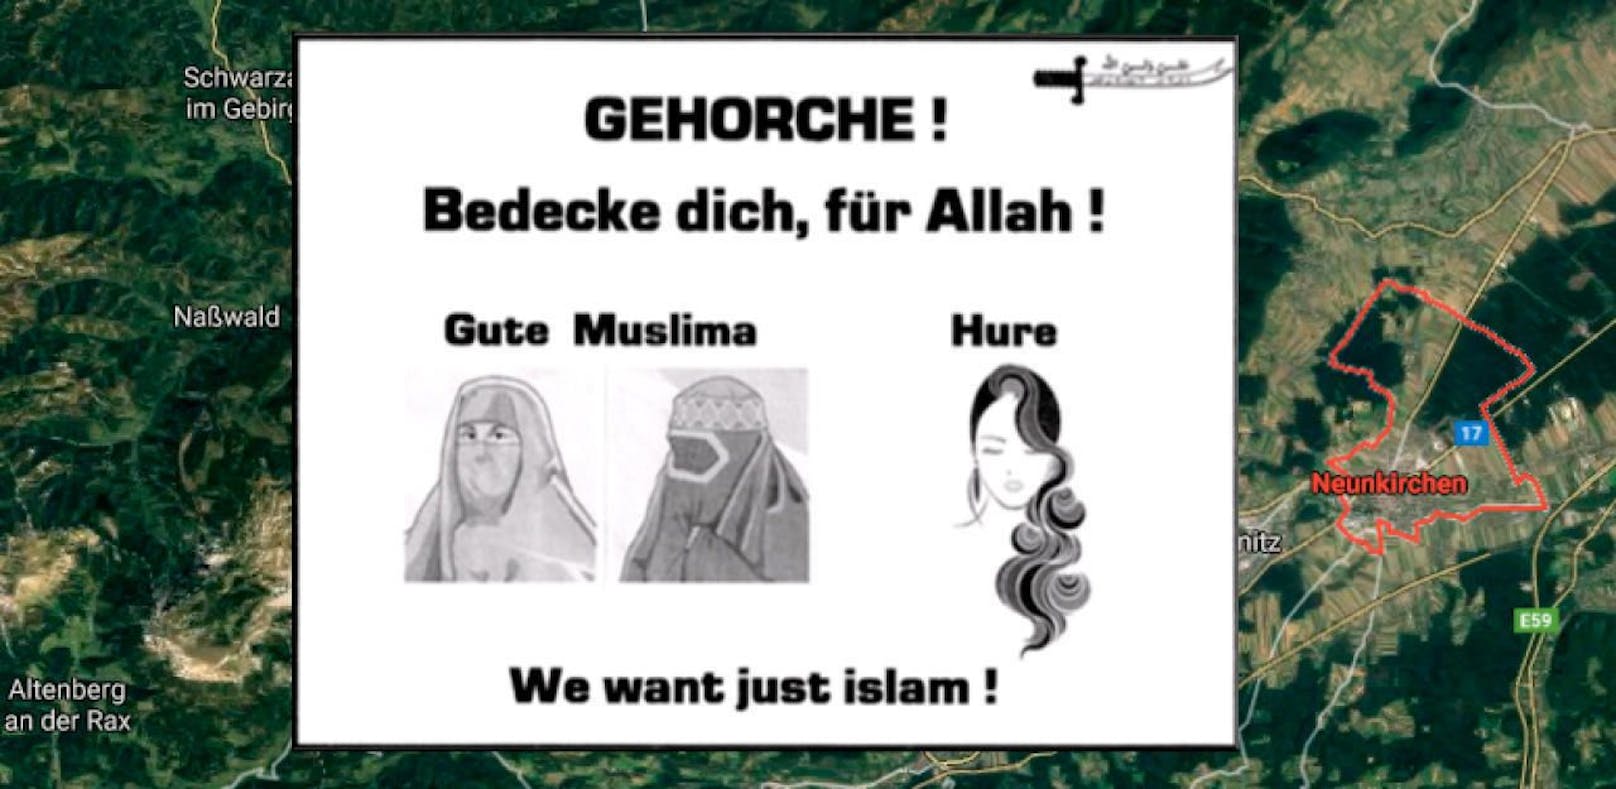 Dieser Islam-Flyer aus NÖ sorgt für viel Wirbel.